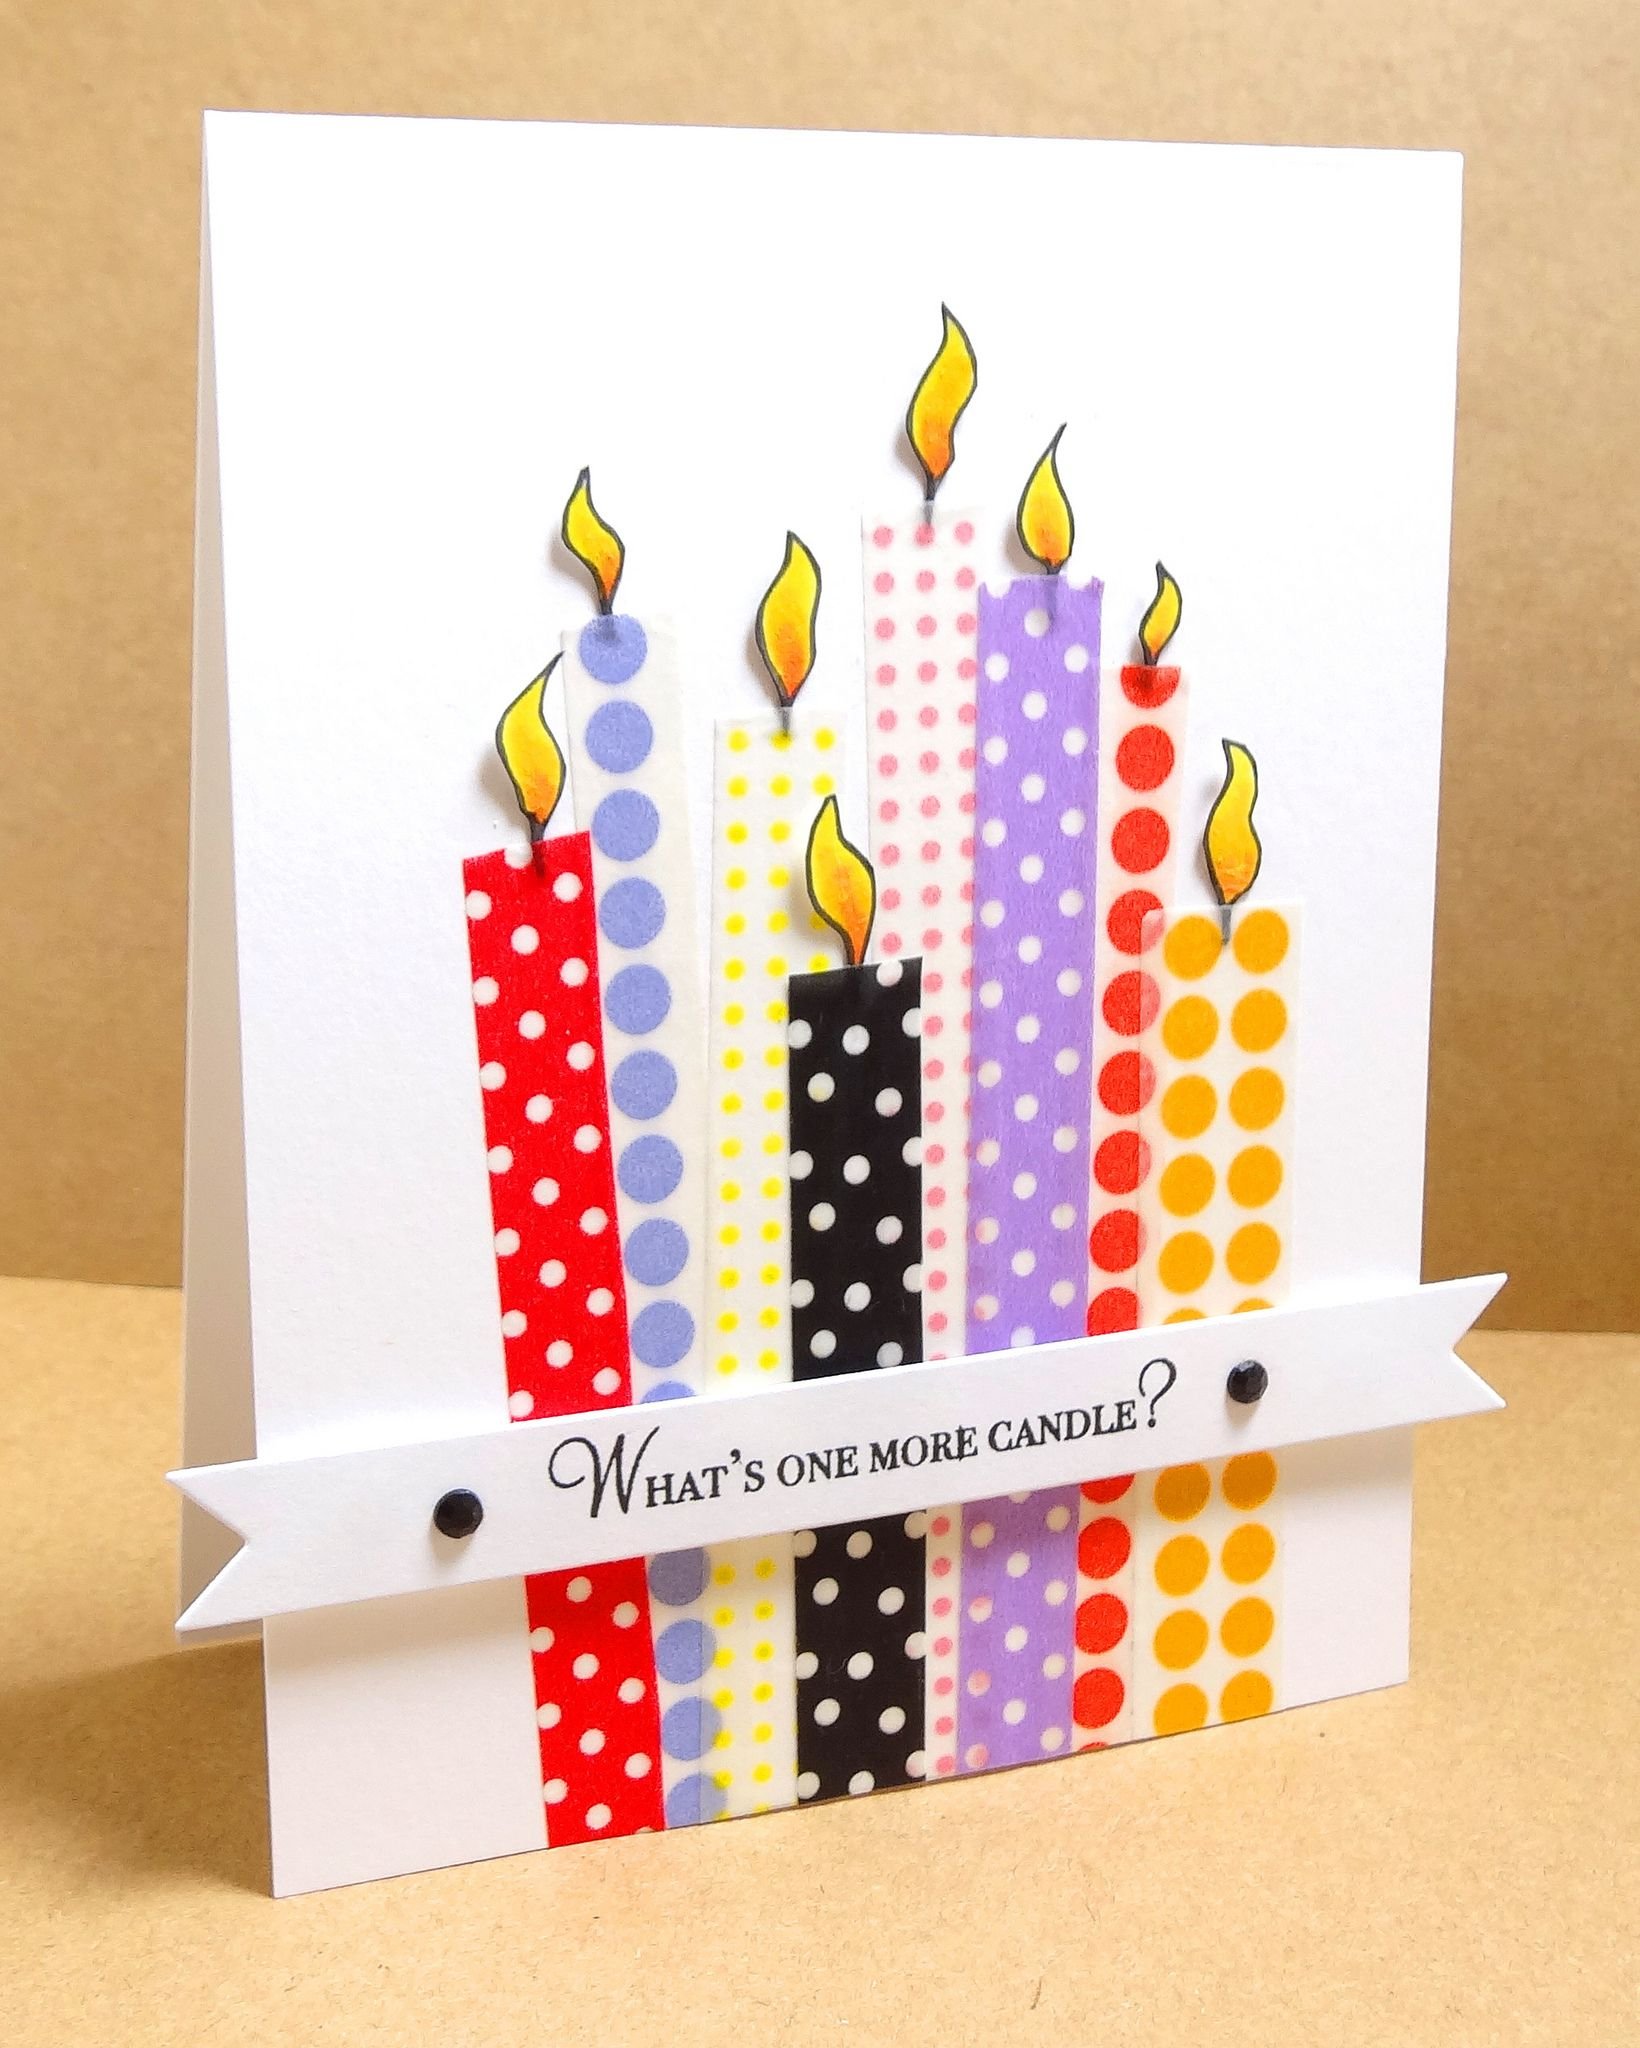 Оригинальные открытки. Идеи для открыток. Самодельные открытки. Самодельные открытки на день рождения. Оригинальные идеи для открыток на день рождения.